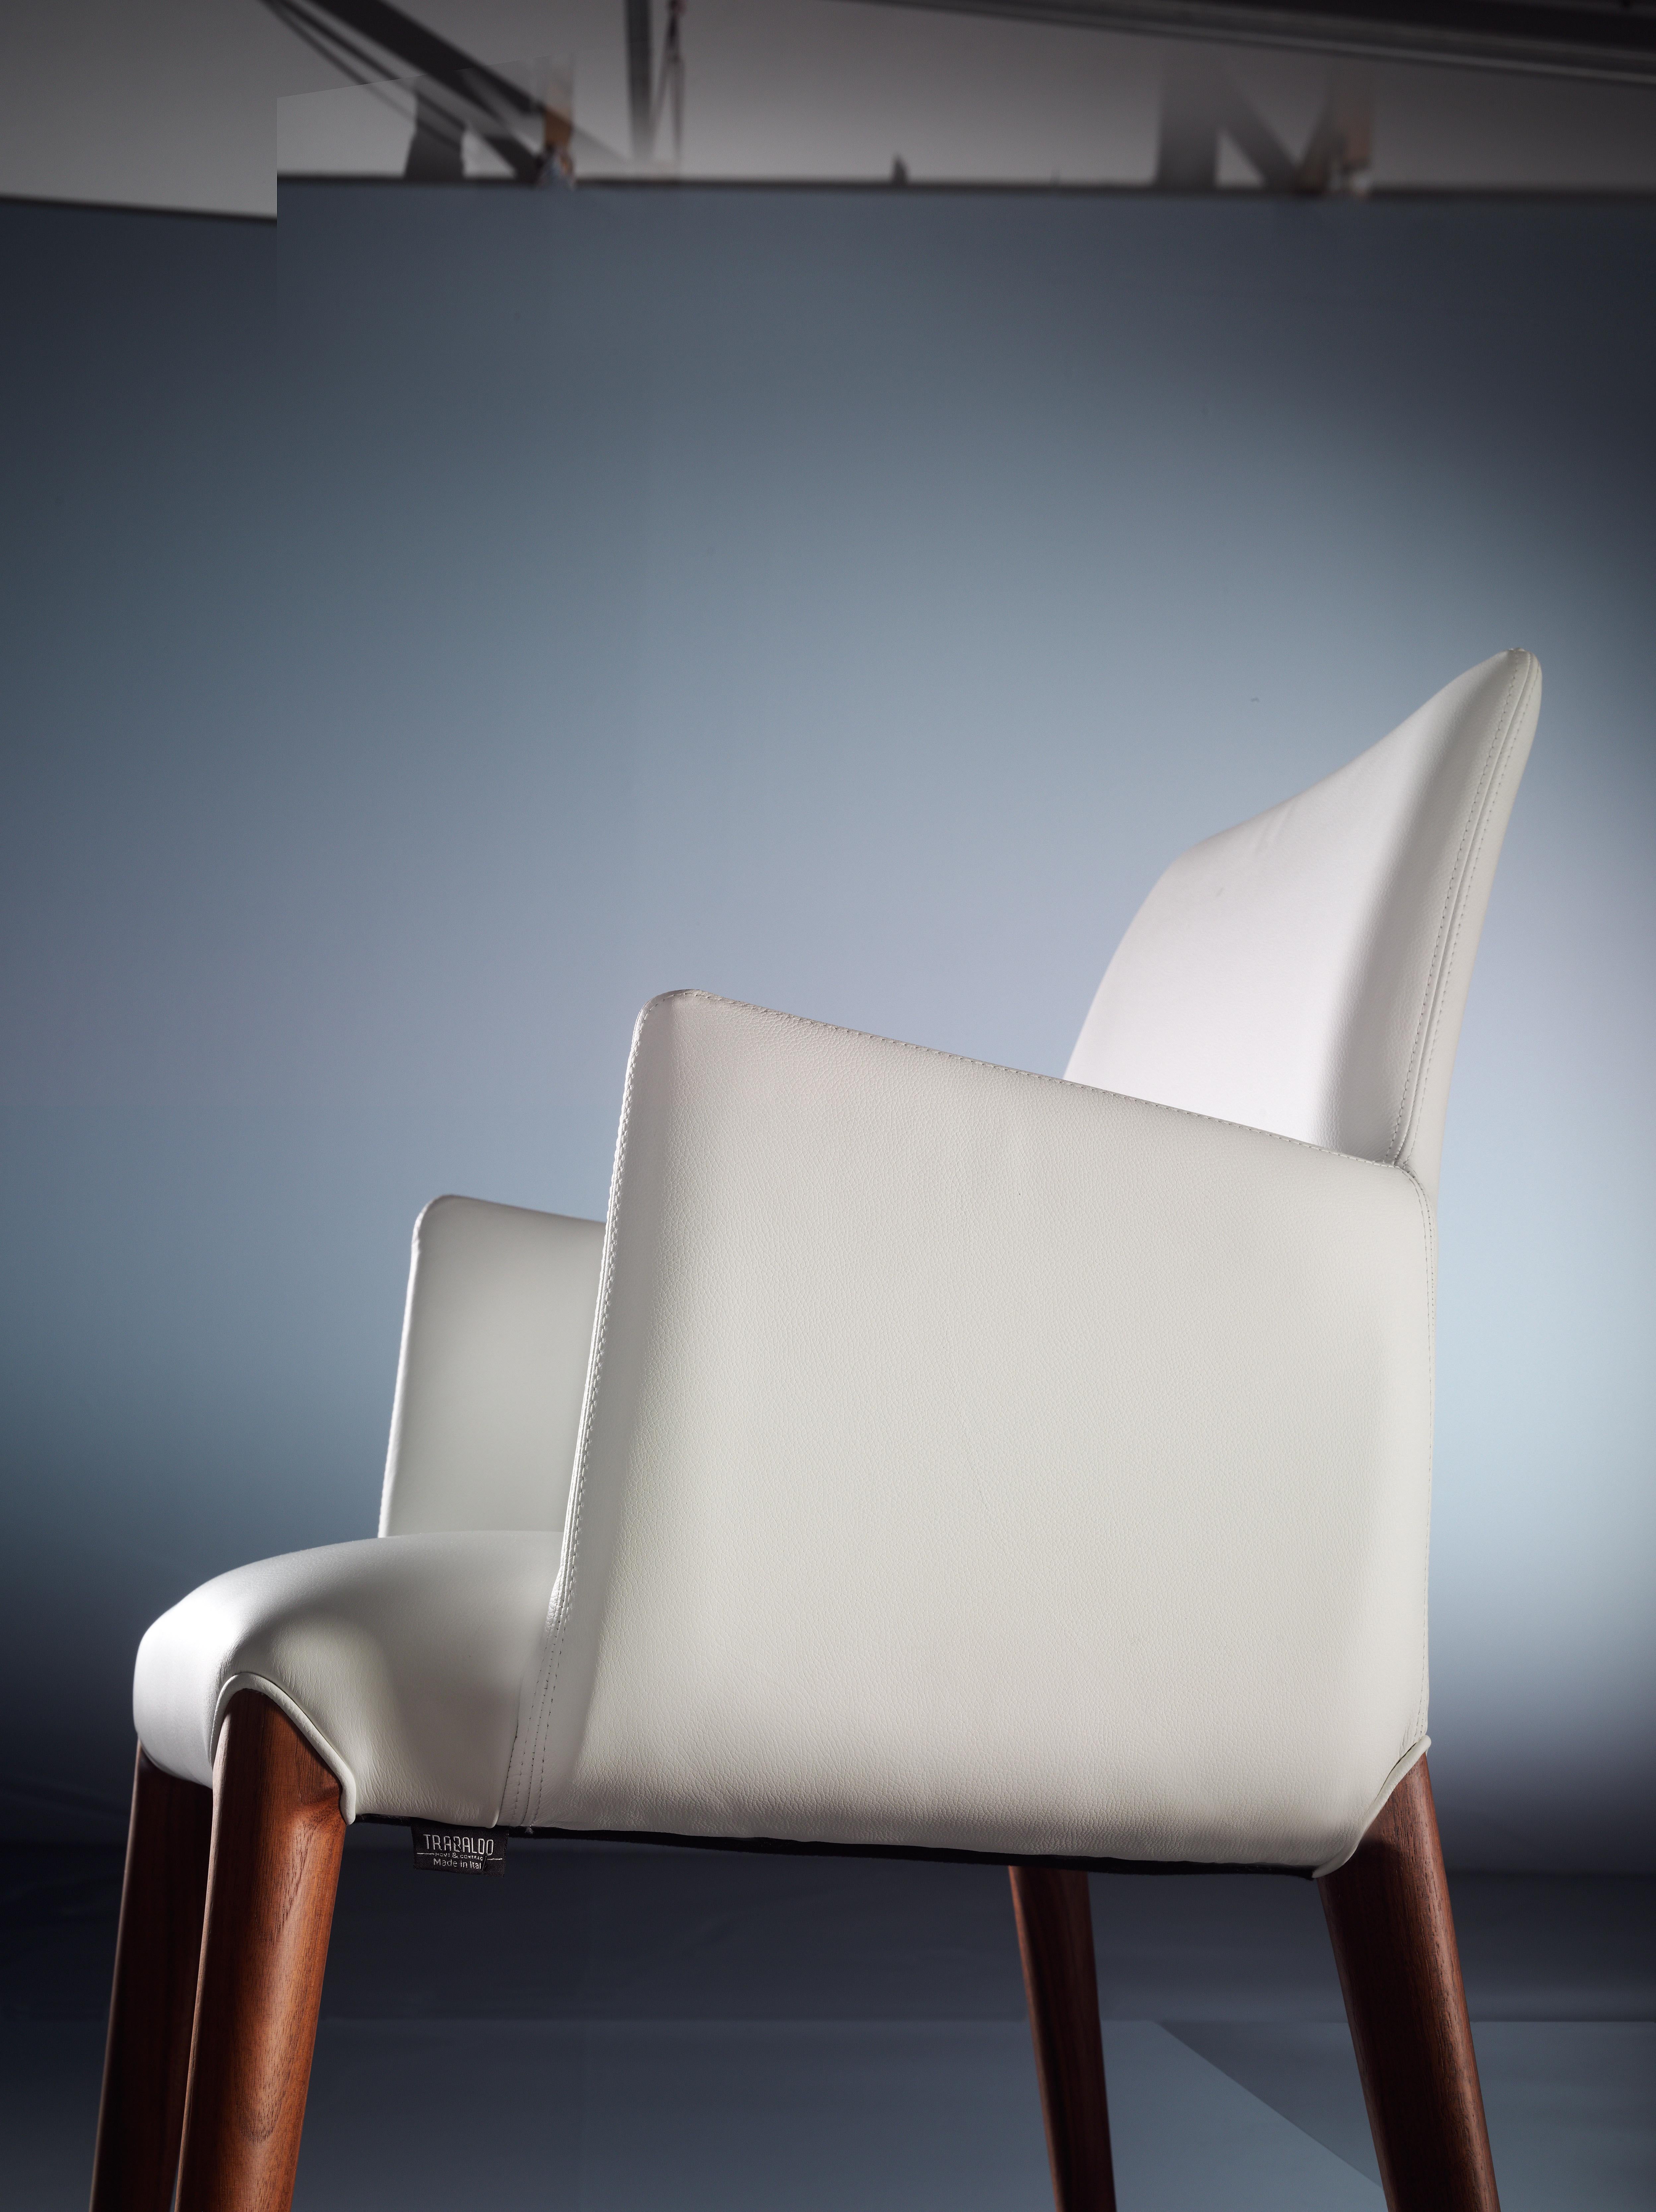 Der Sessel Ines ist eine hervorragende italienische Manufaktur.
Der Rahmen aus Massivholz wird von Hand gebogen und mit Geschick bearbeitet.
Die Polsterung ist weich, bequem und gleichzeitig langlebig, das Leder und alle Materialien sind